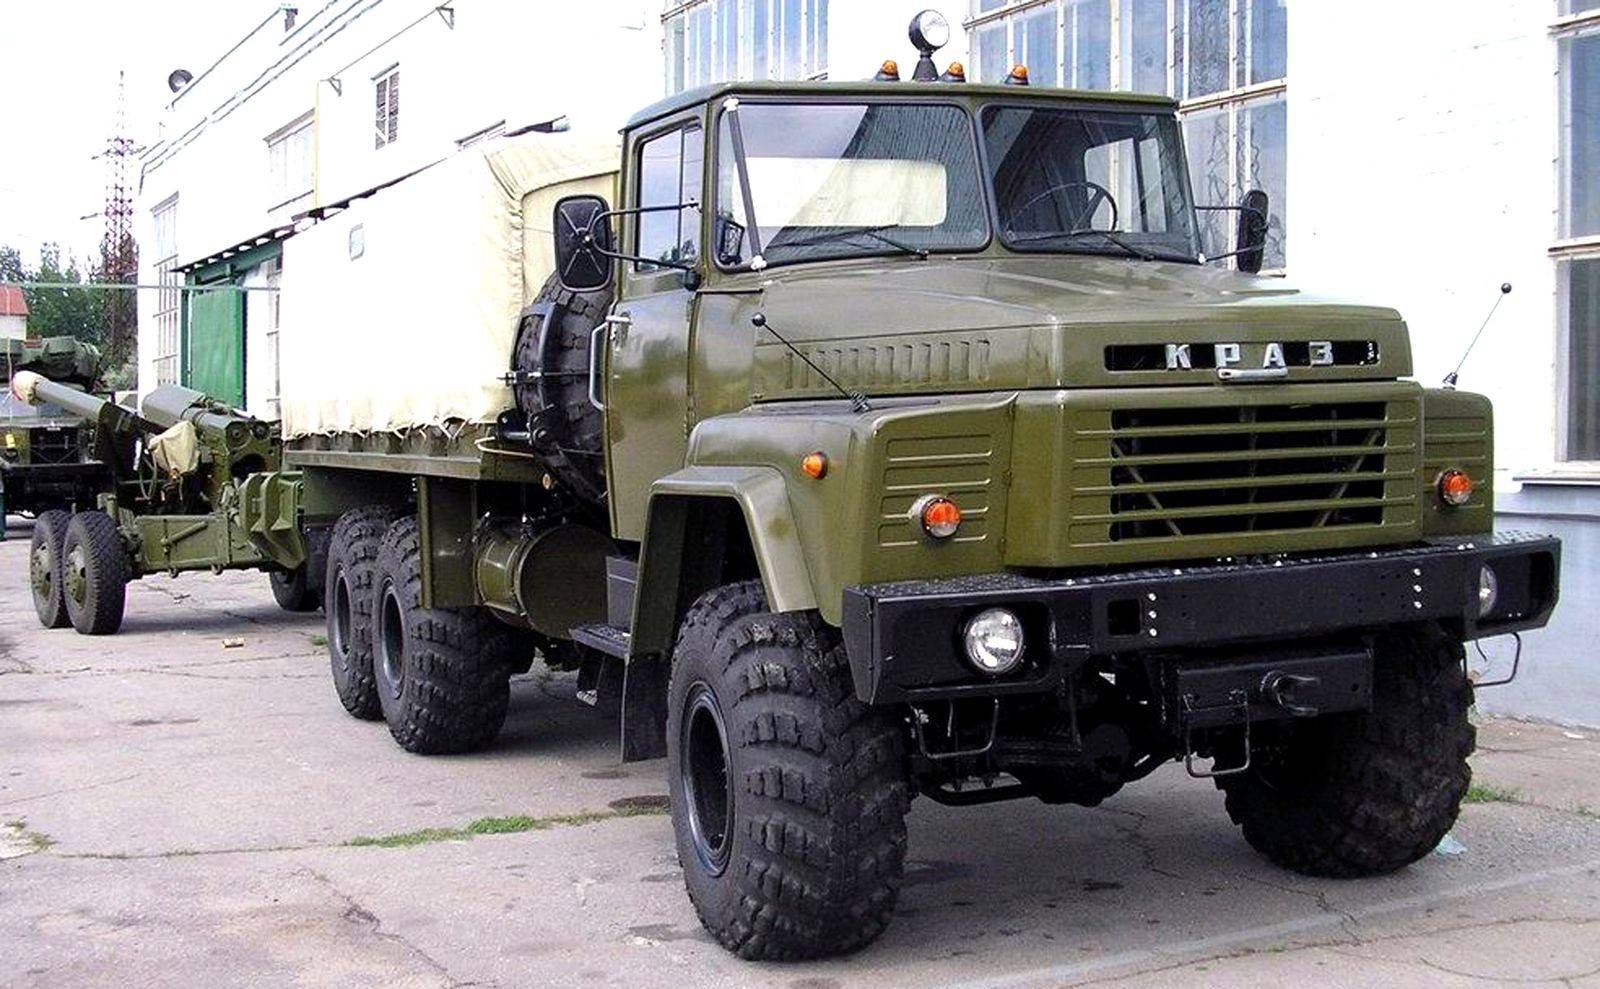 Краз-260 (1970/1979-1998 гг.). автомобили советской армии 1946-1991